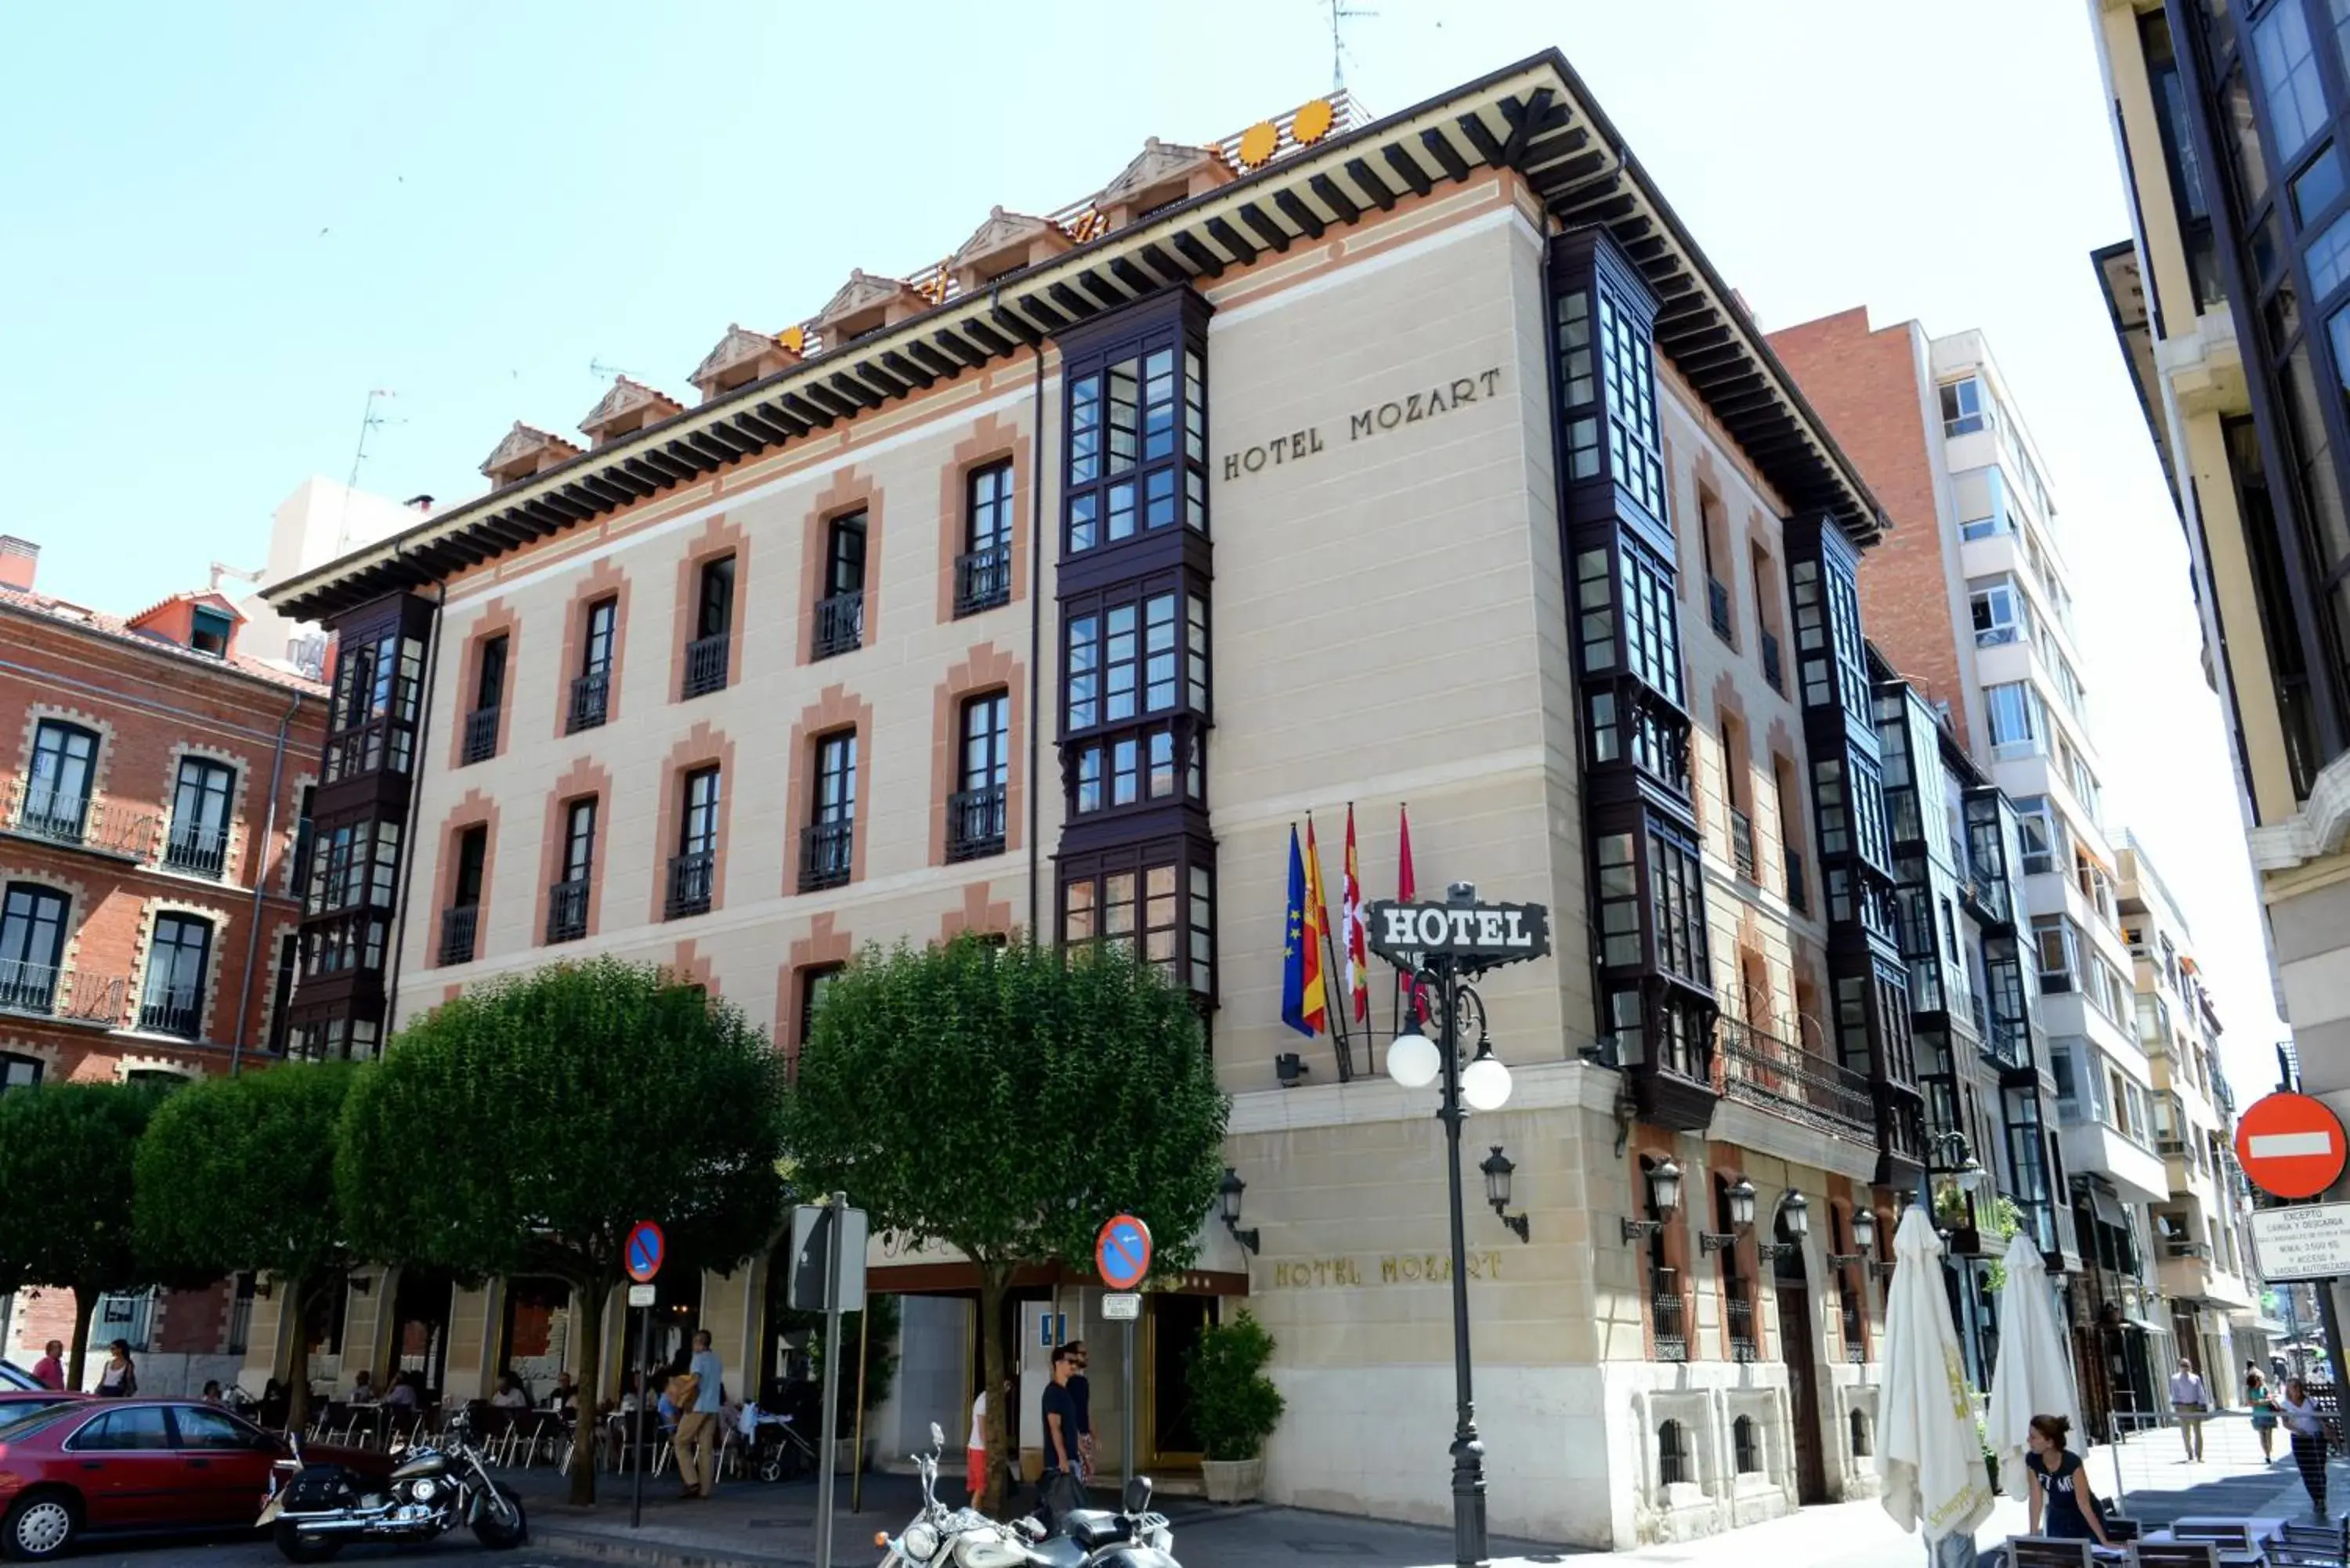 Facade/entrance, Property Building in Hotel Mozart